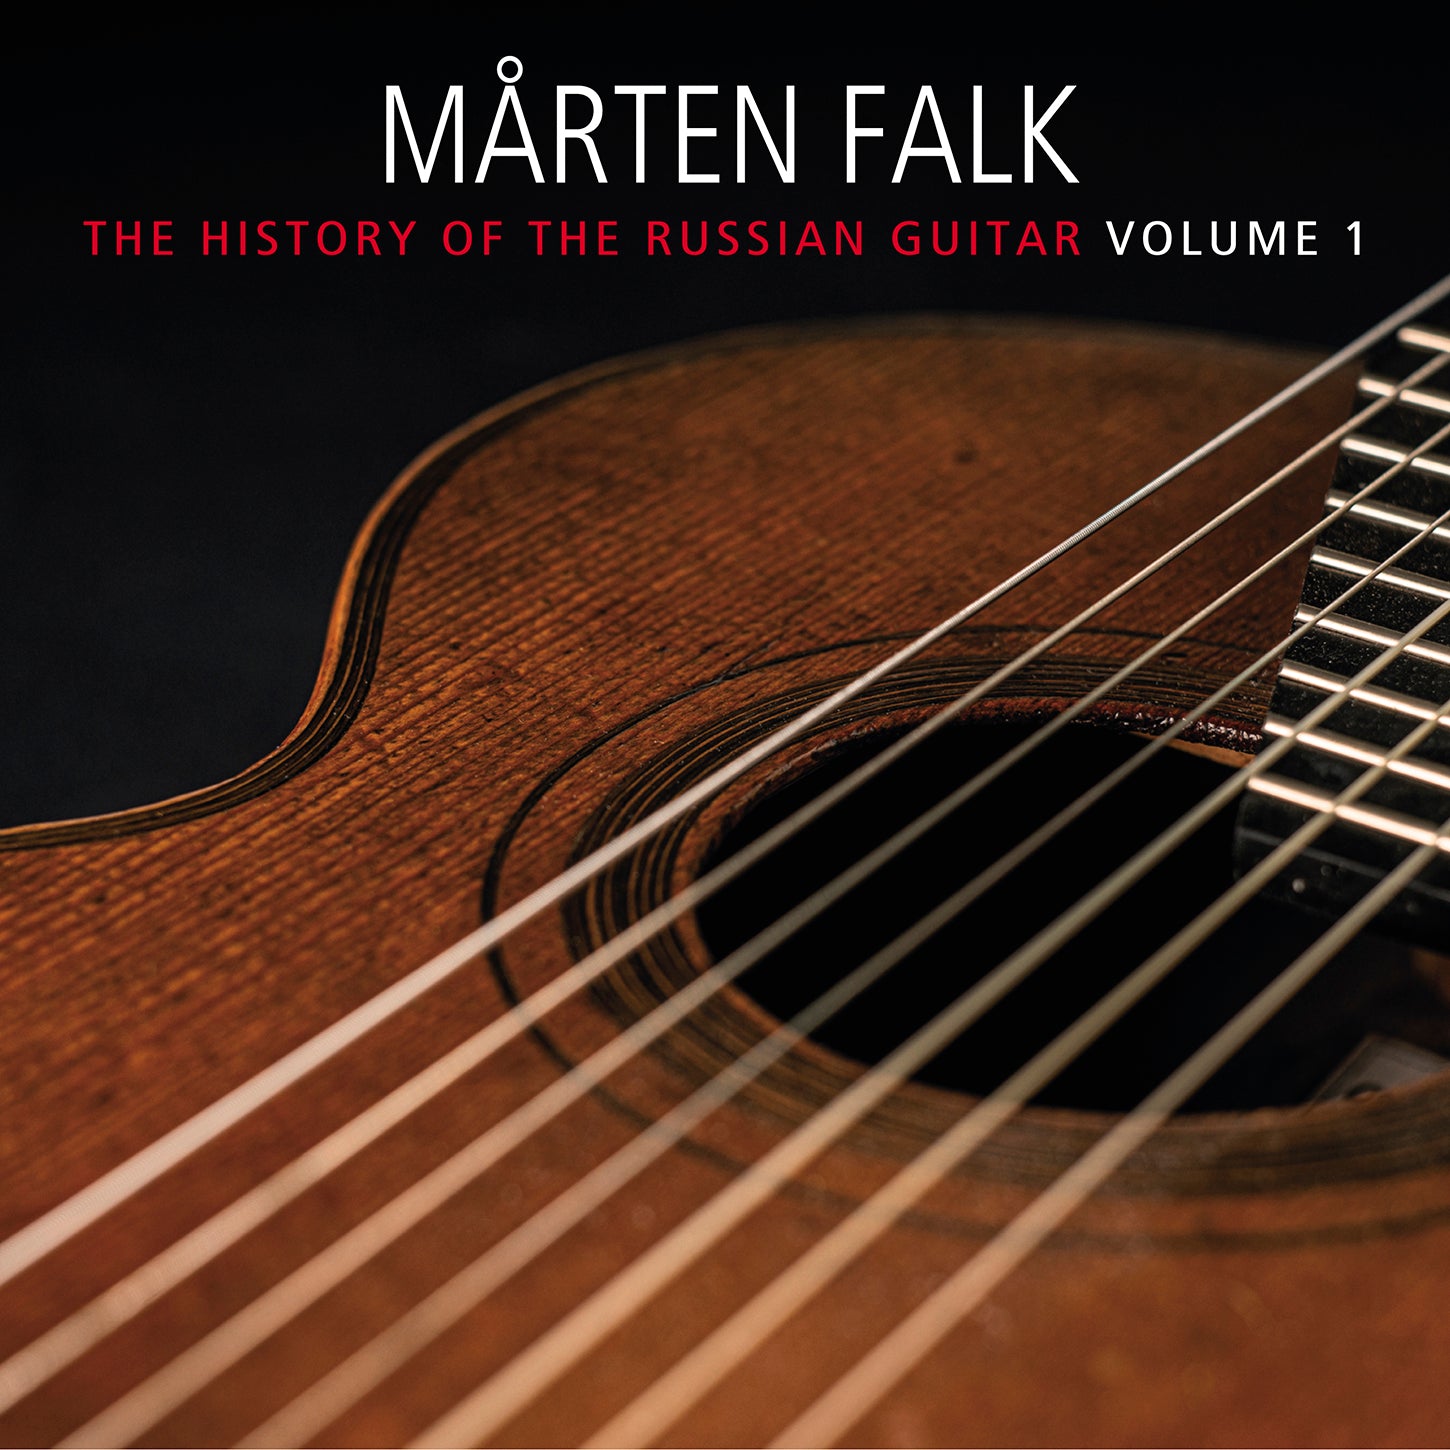 Aksionov, Held, Morkov, Sychra & Vysotsky: History of Russian Guitar, Vol. 1 / Falk